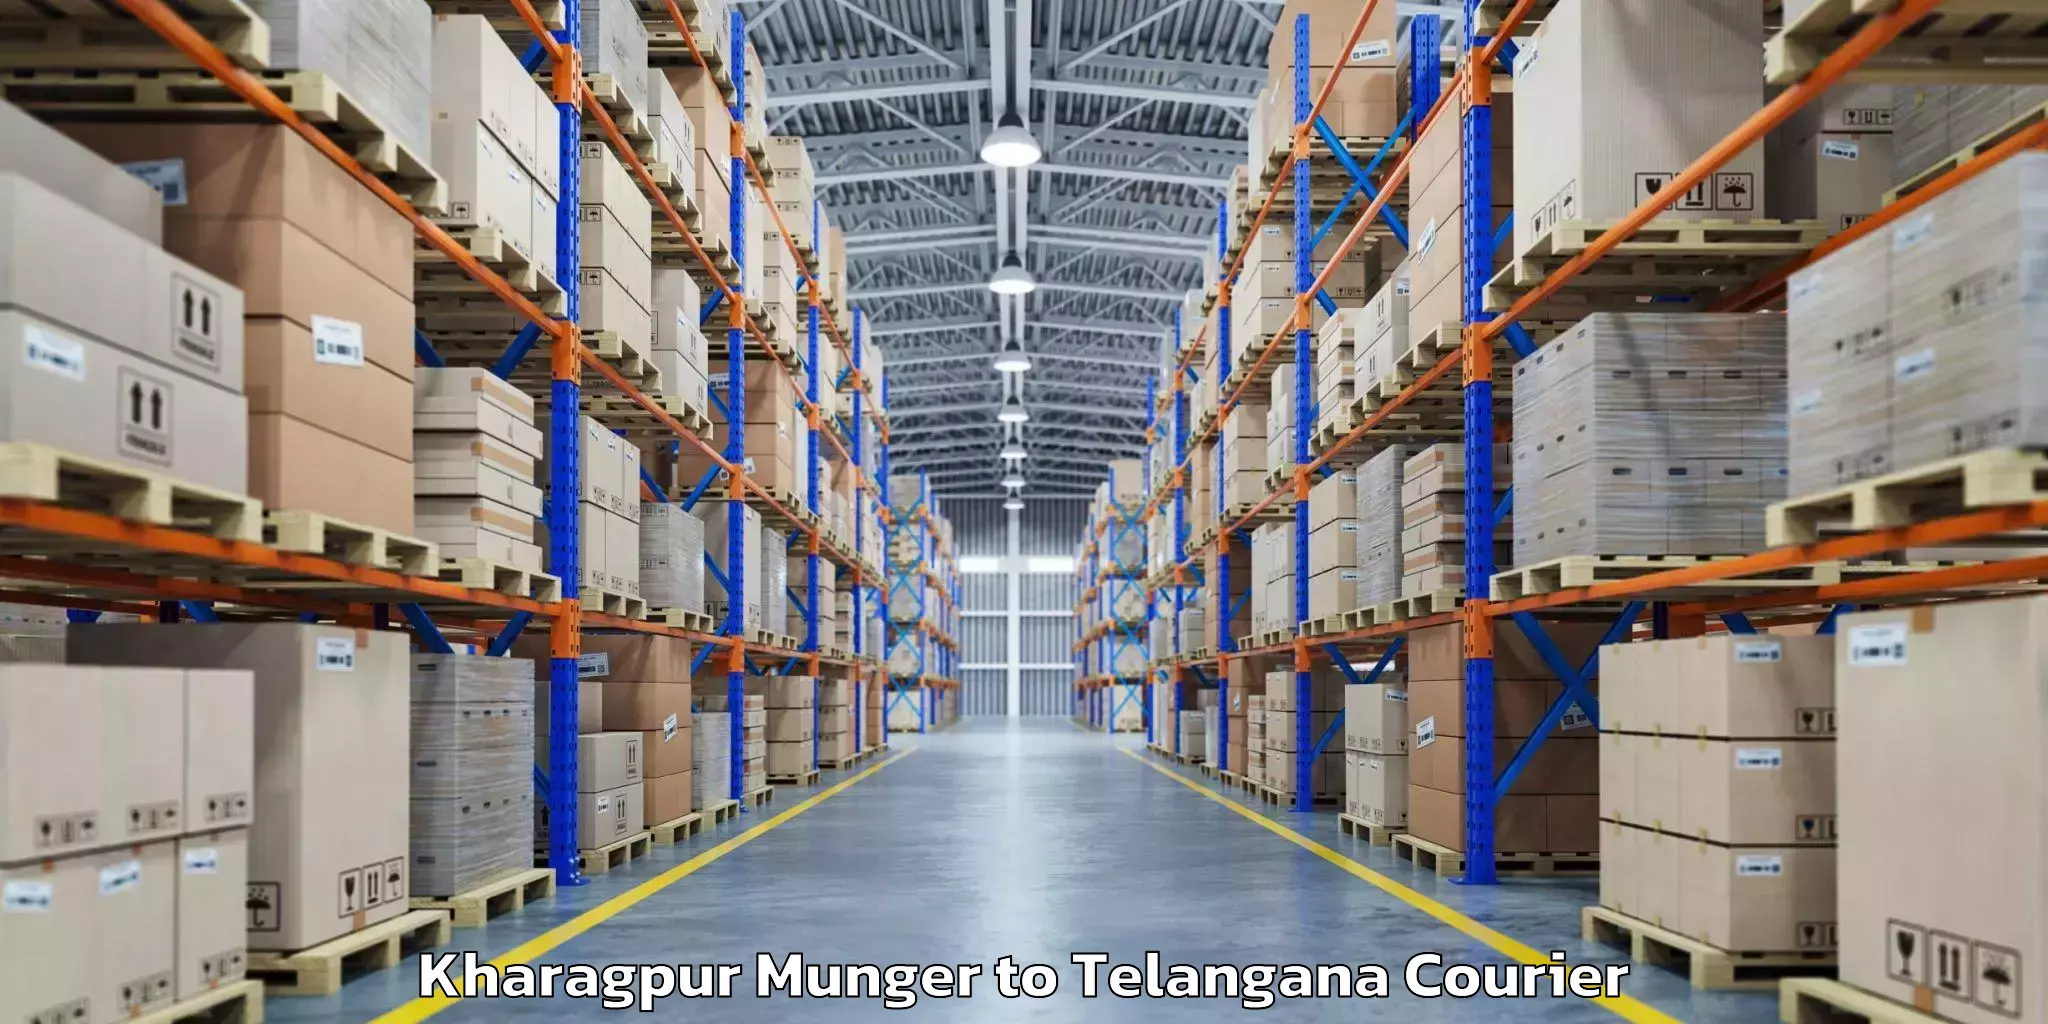 Urgent luggage shipment Kharagpur Munger to Kodad